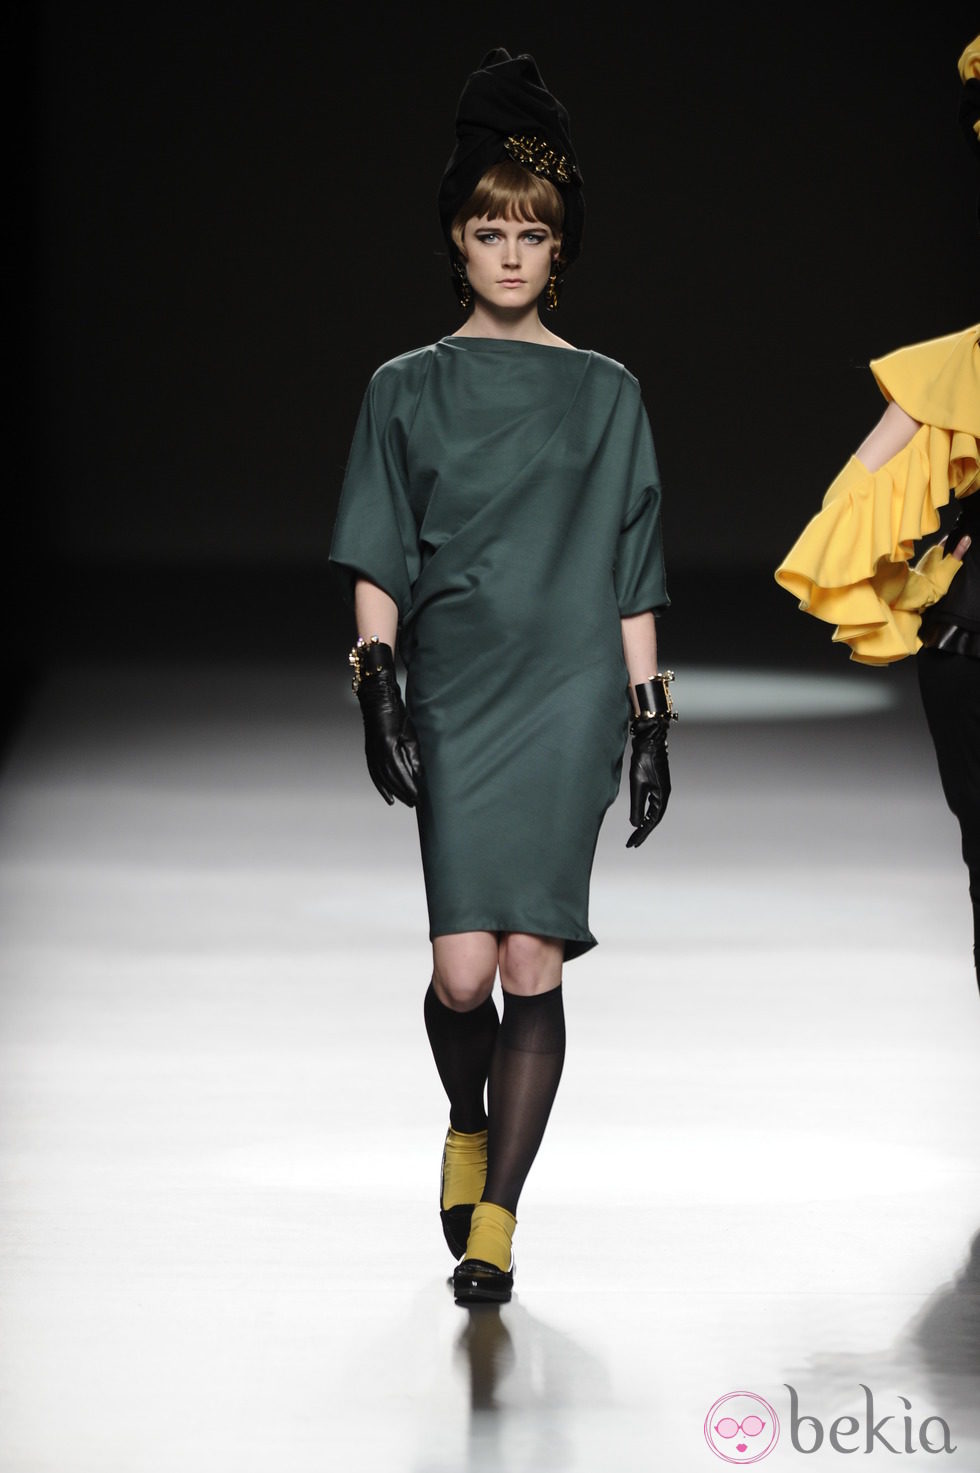 Vestido verde musgo de la colección otoño/invierno 2013/2014 de María Barros en Madrid Fashion Week